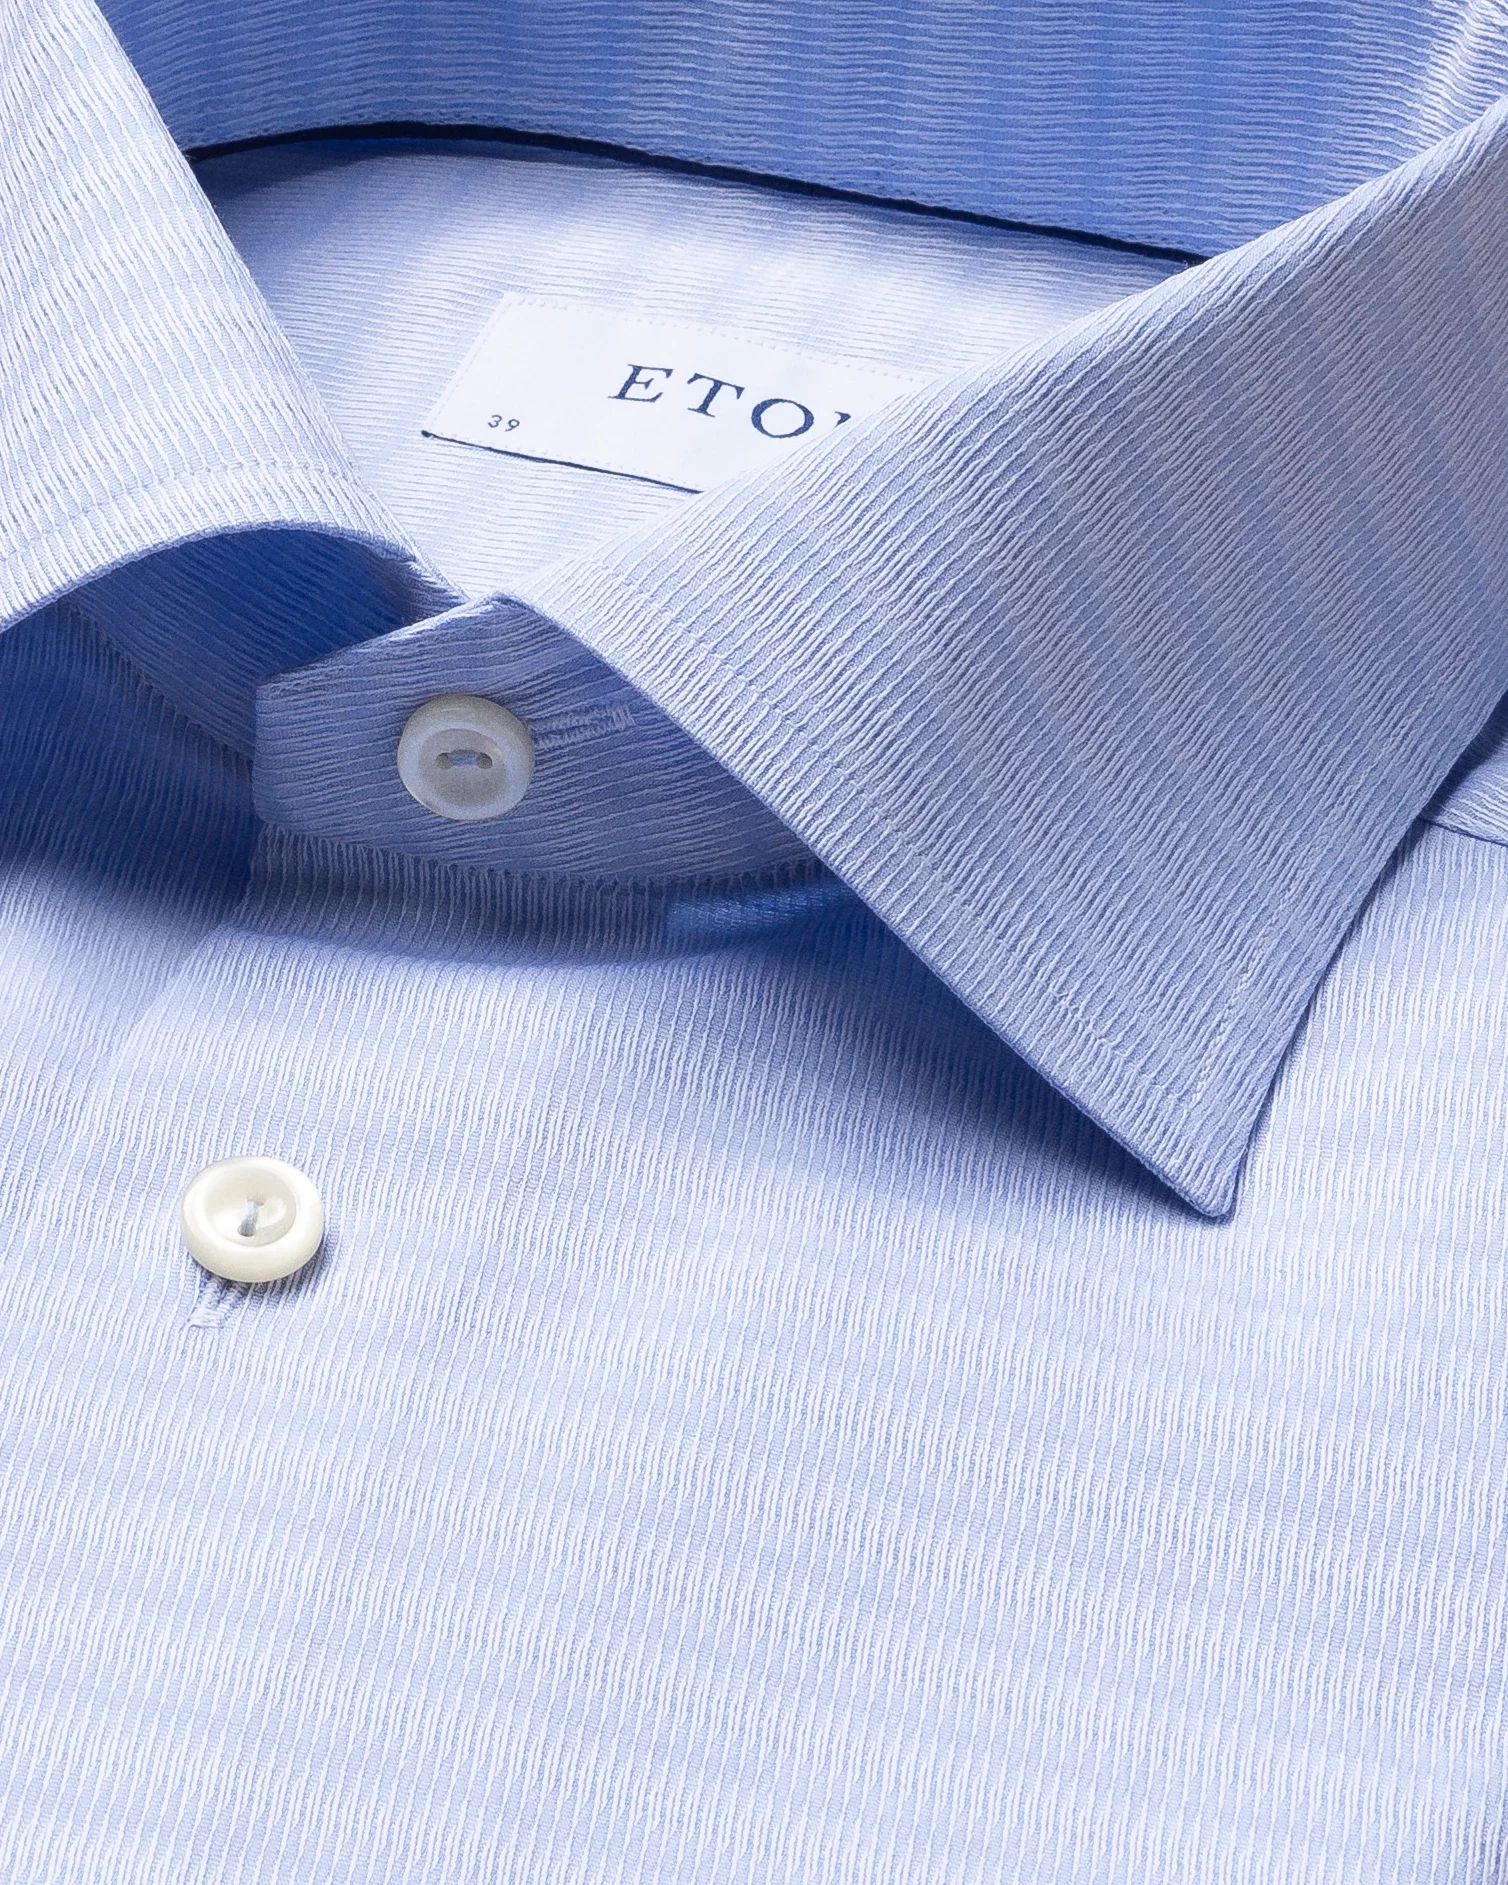 Eton - light blue brocade shirt